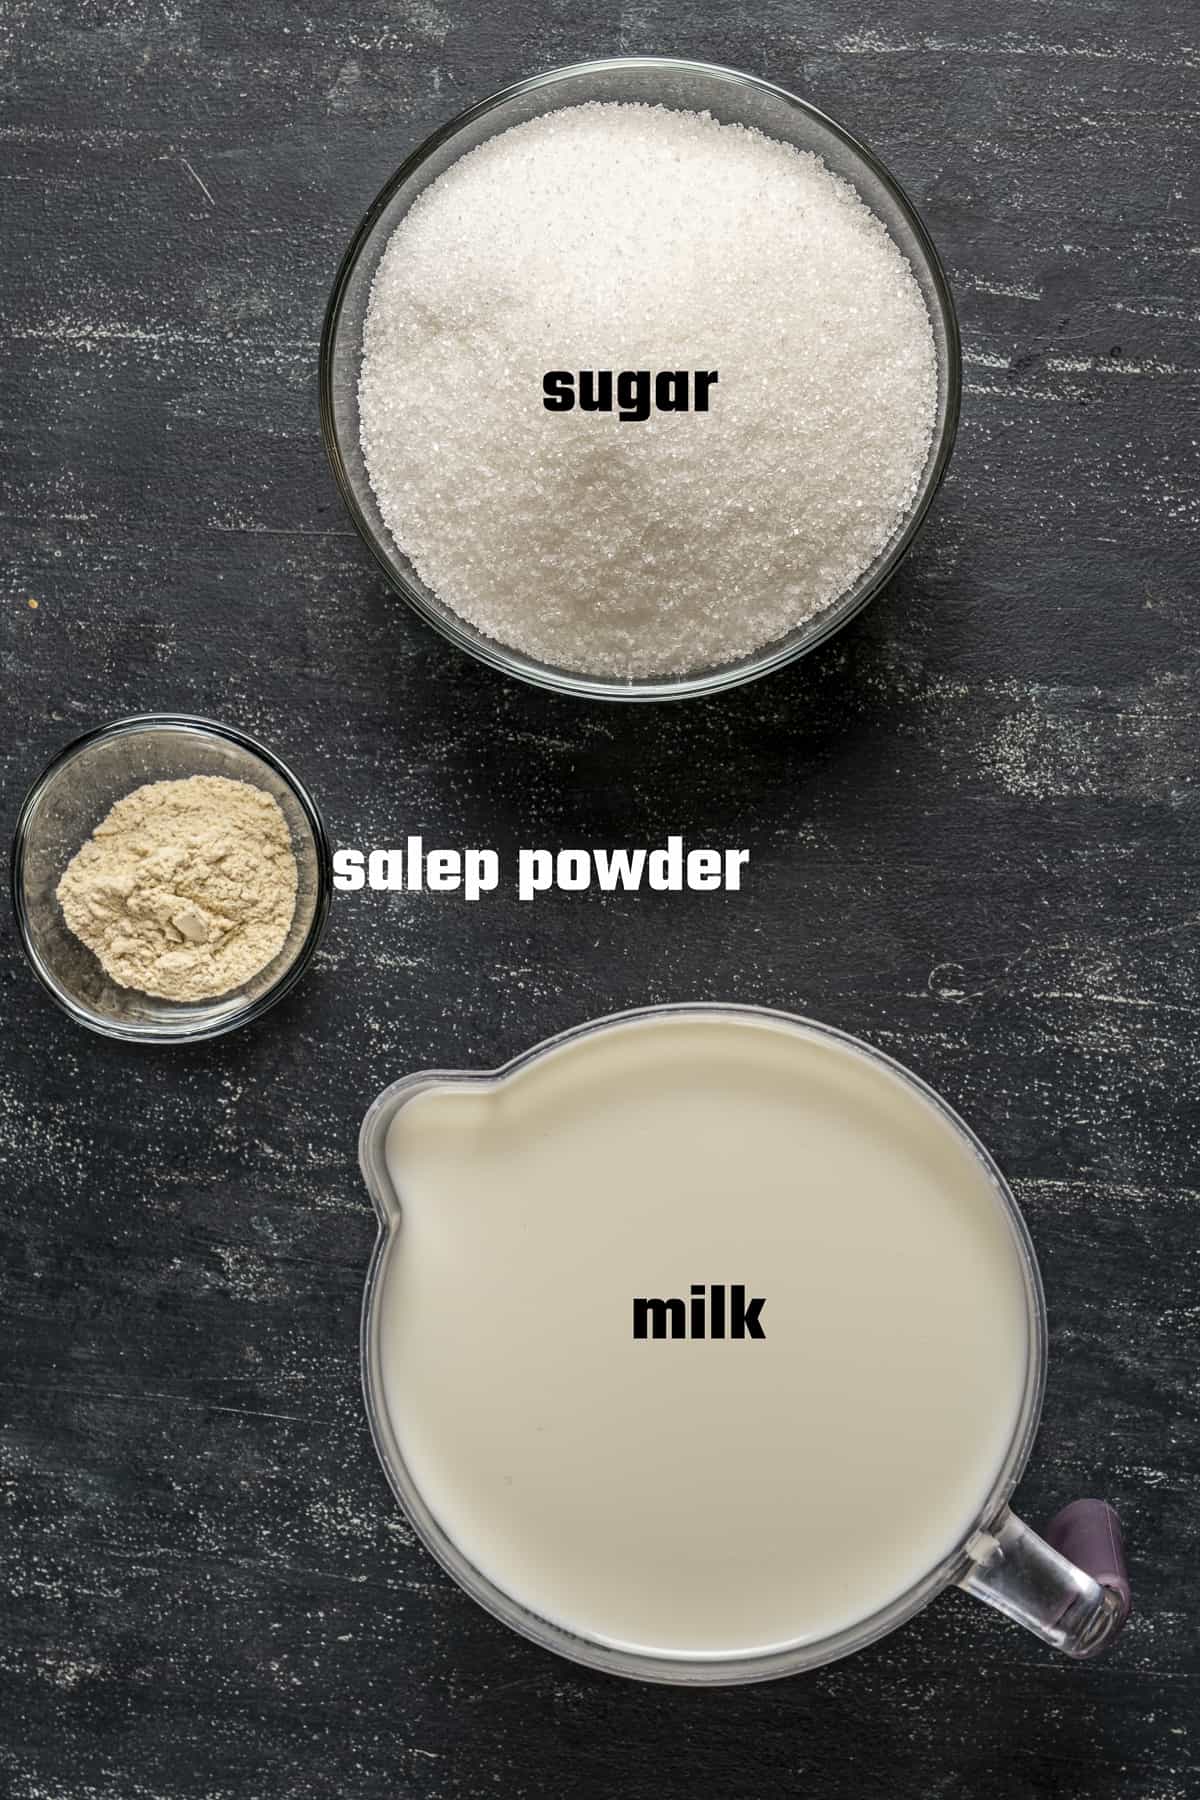 Sugar, milk and salep powder on a dark background.